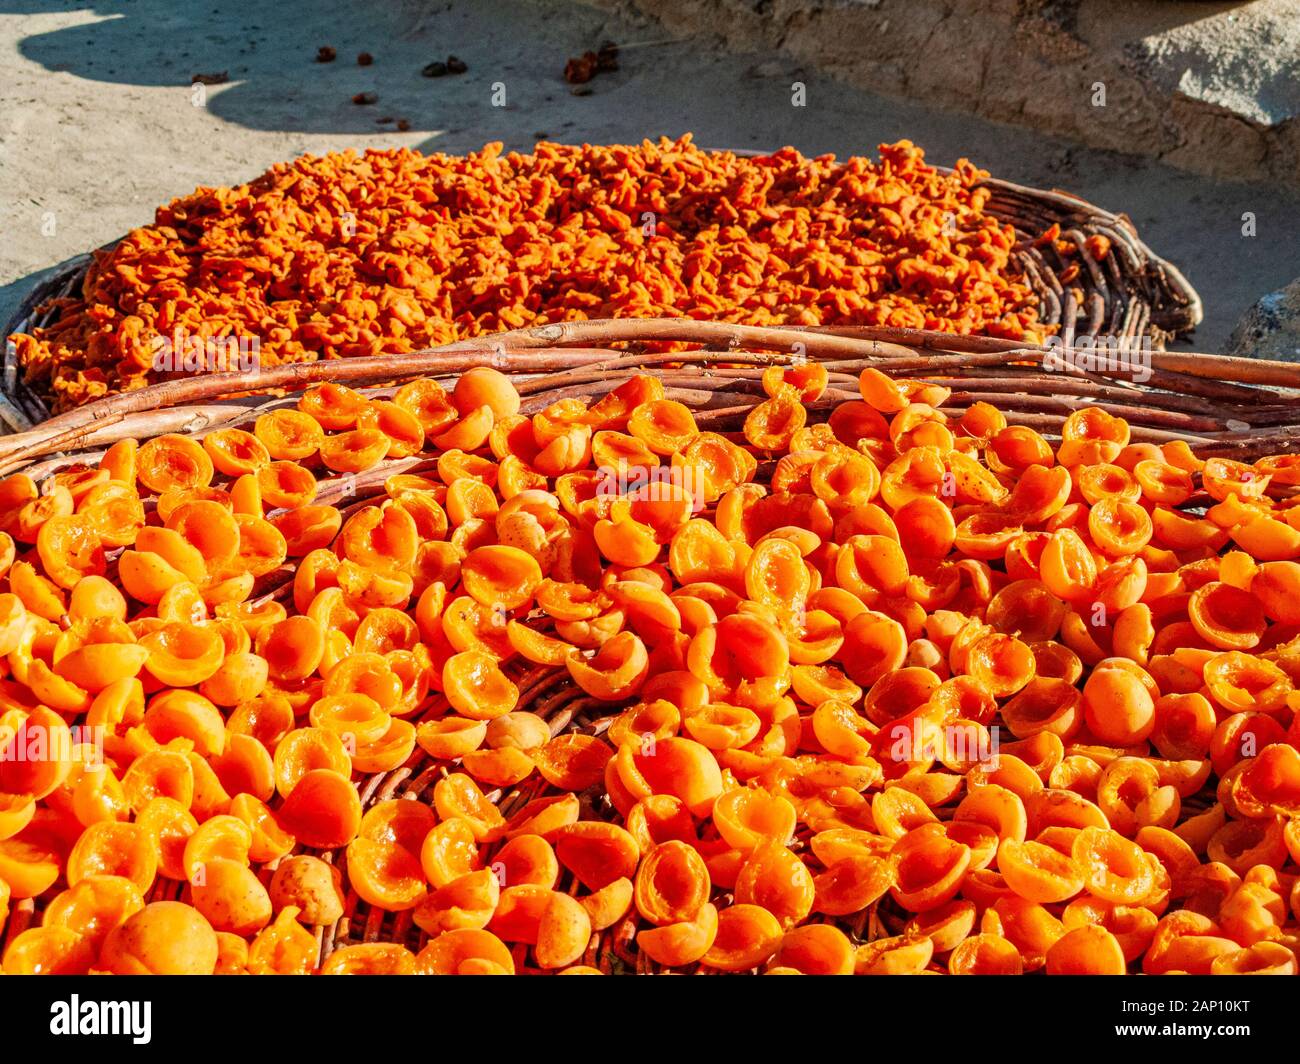 Les abricots, les délicieux fruits de cette région, sont en train de sécher au soleil Banque D'Images